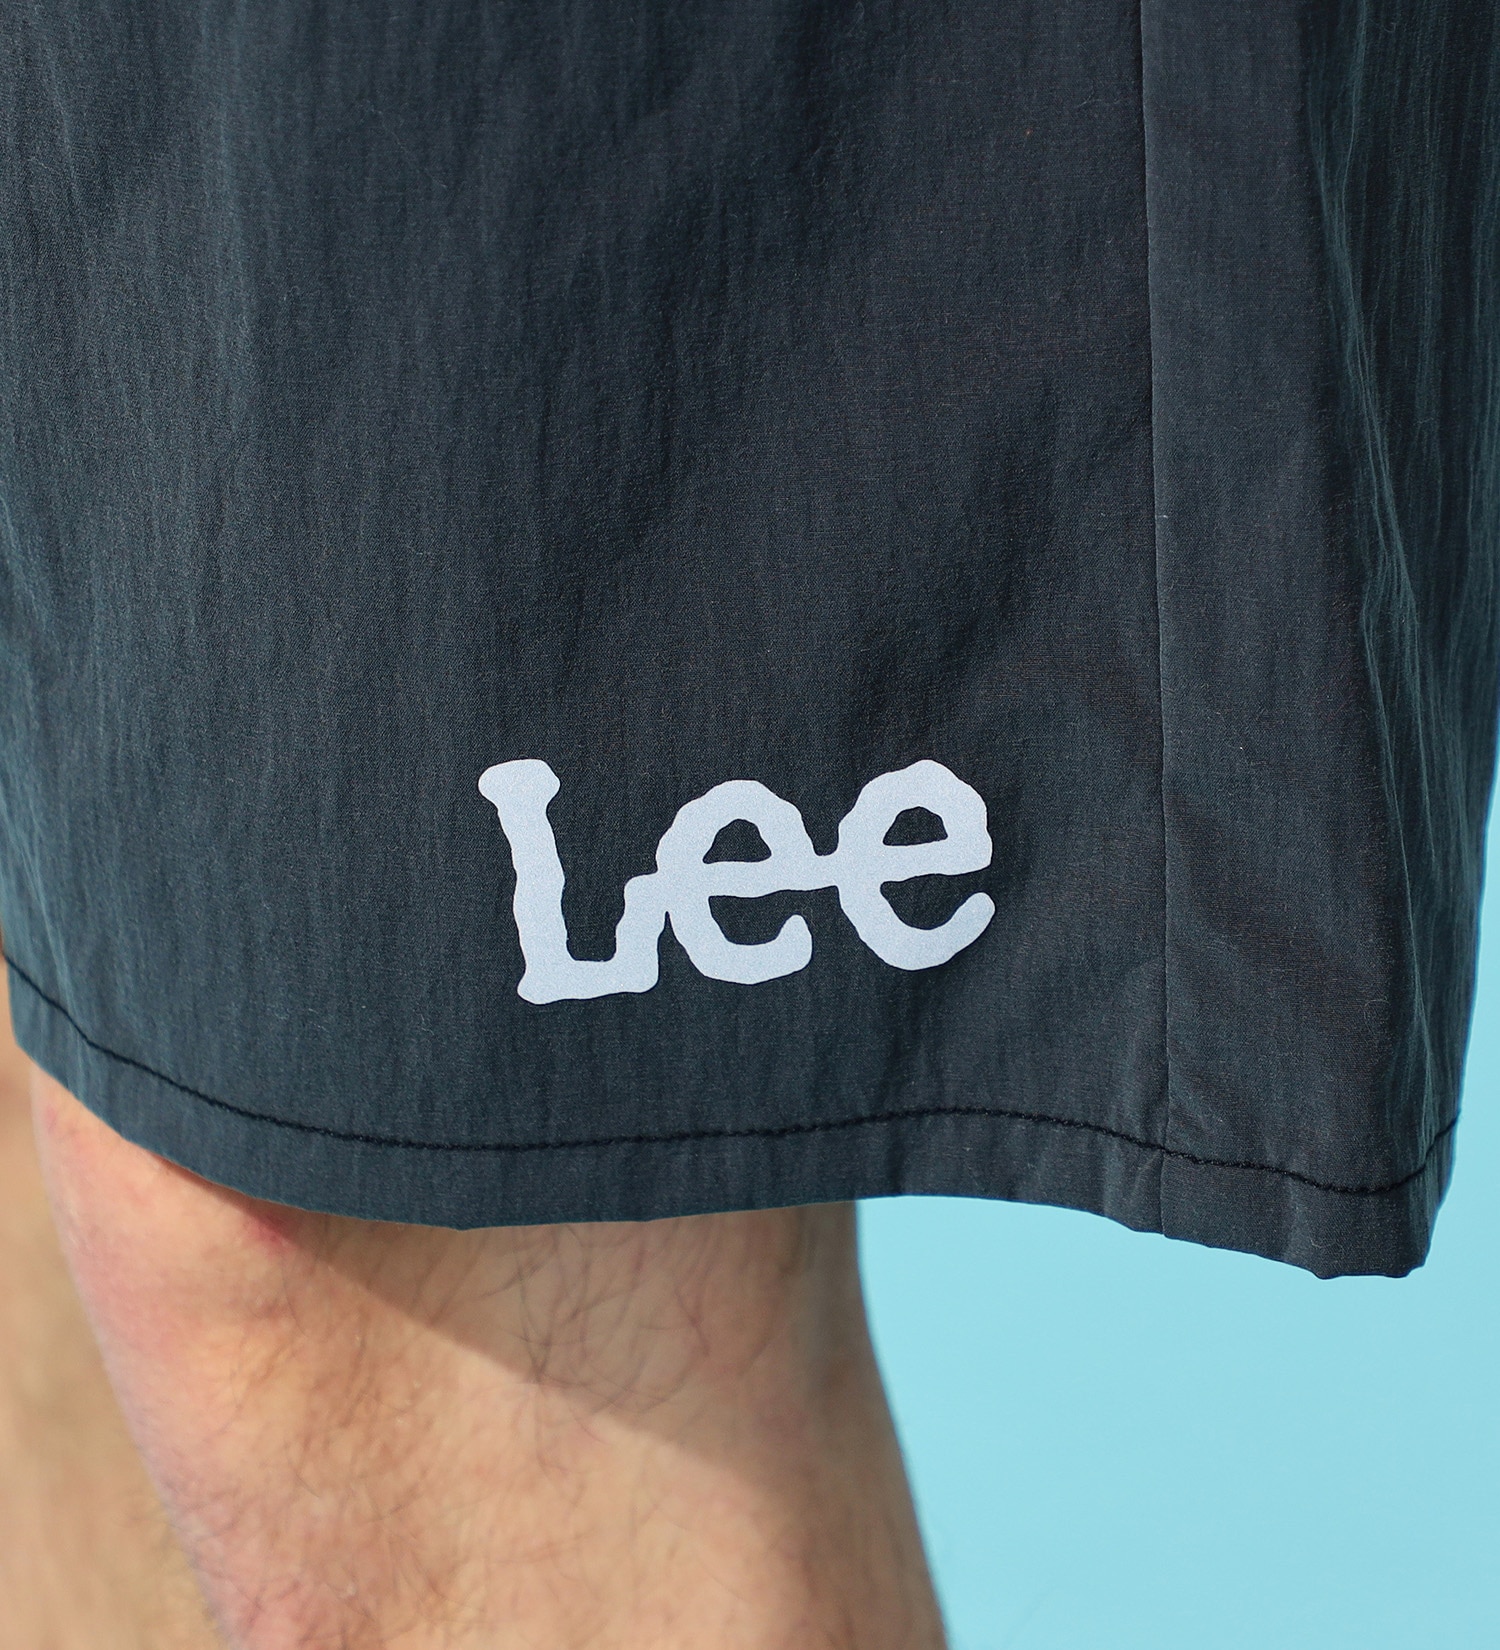 Lee(リー)の【試着対象】アスレチックショーツ|パンツ/パンツ/メンズ|ブラック